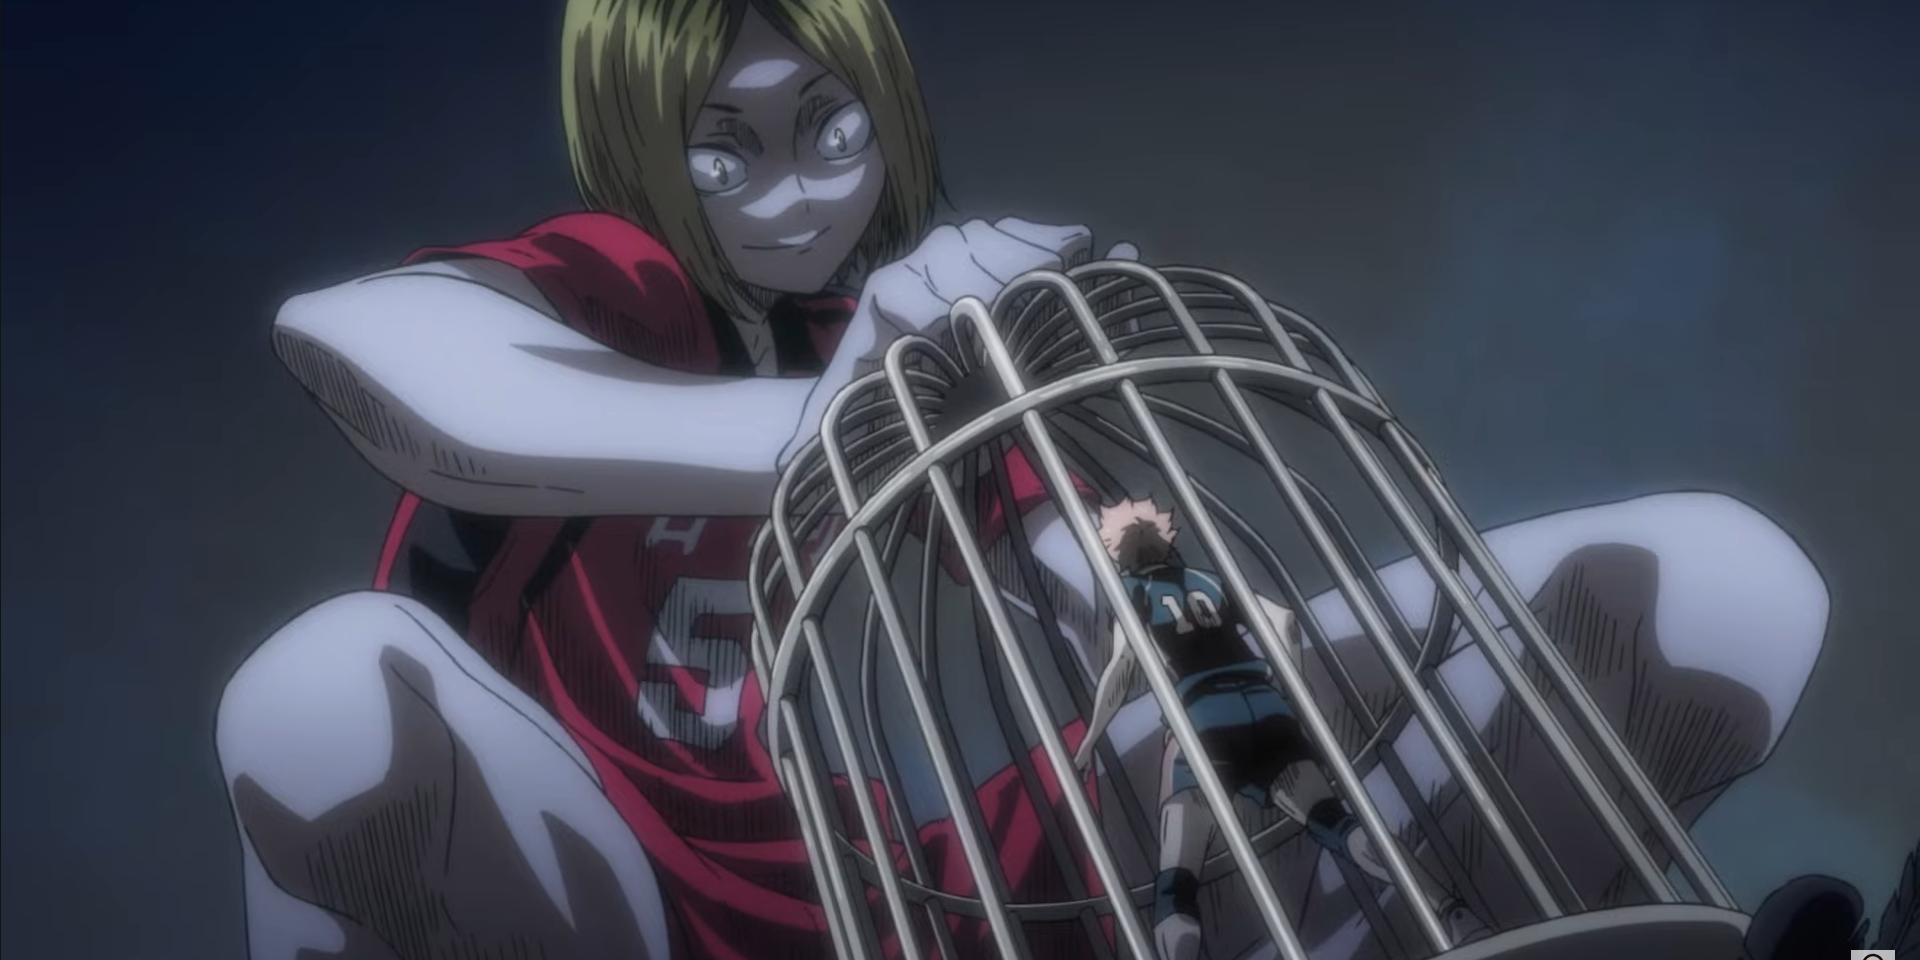 Kenma intimidates Hinata, mentally caging him